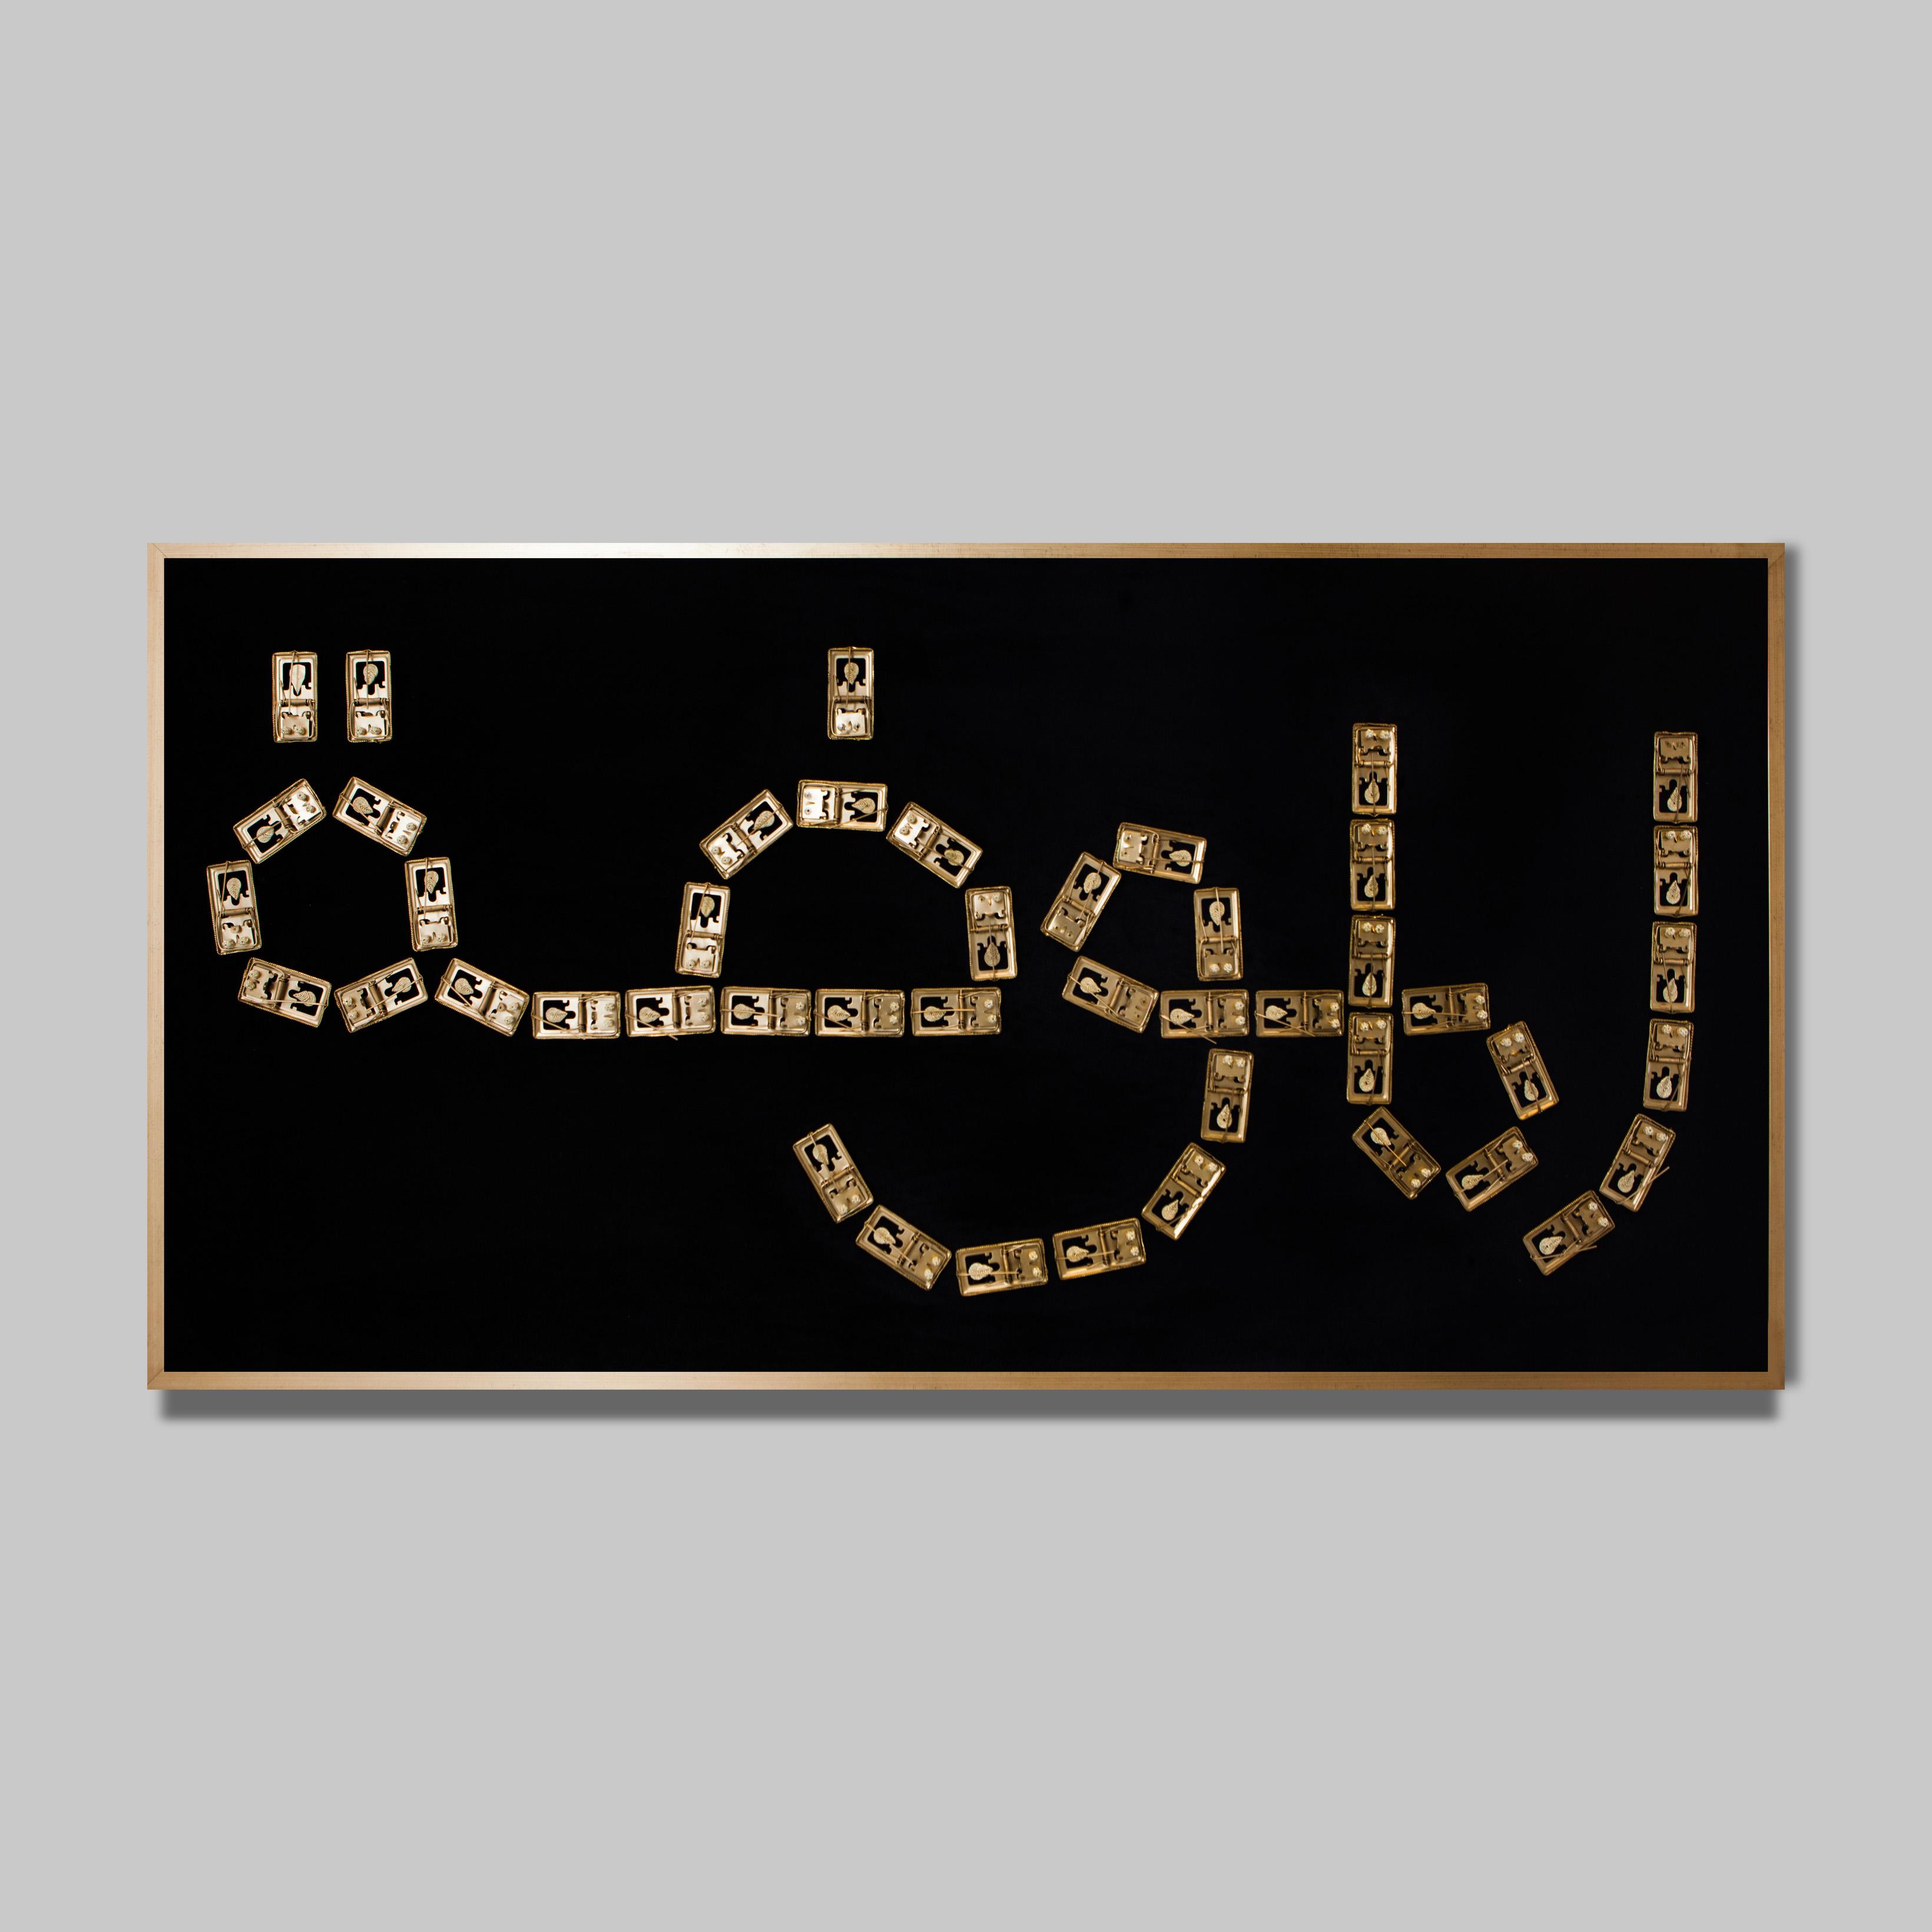 Yasmina Ouahid
Al Moda
Technique mixte sur panneau
200 x 100 cm